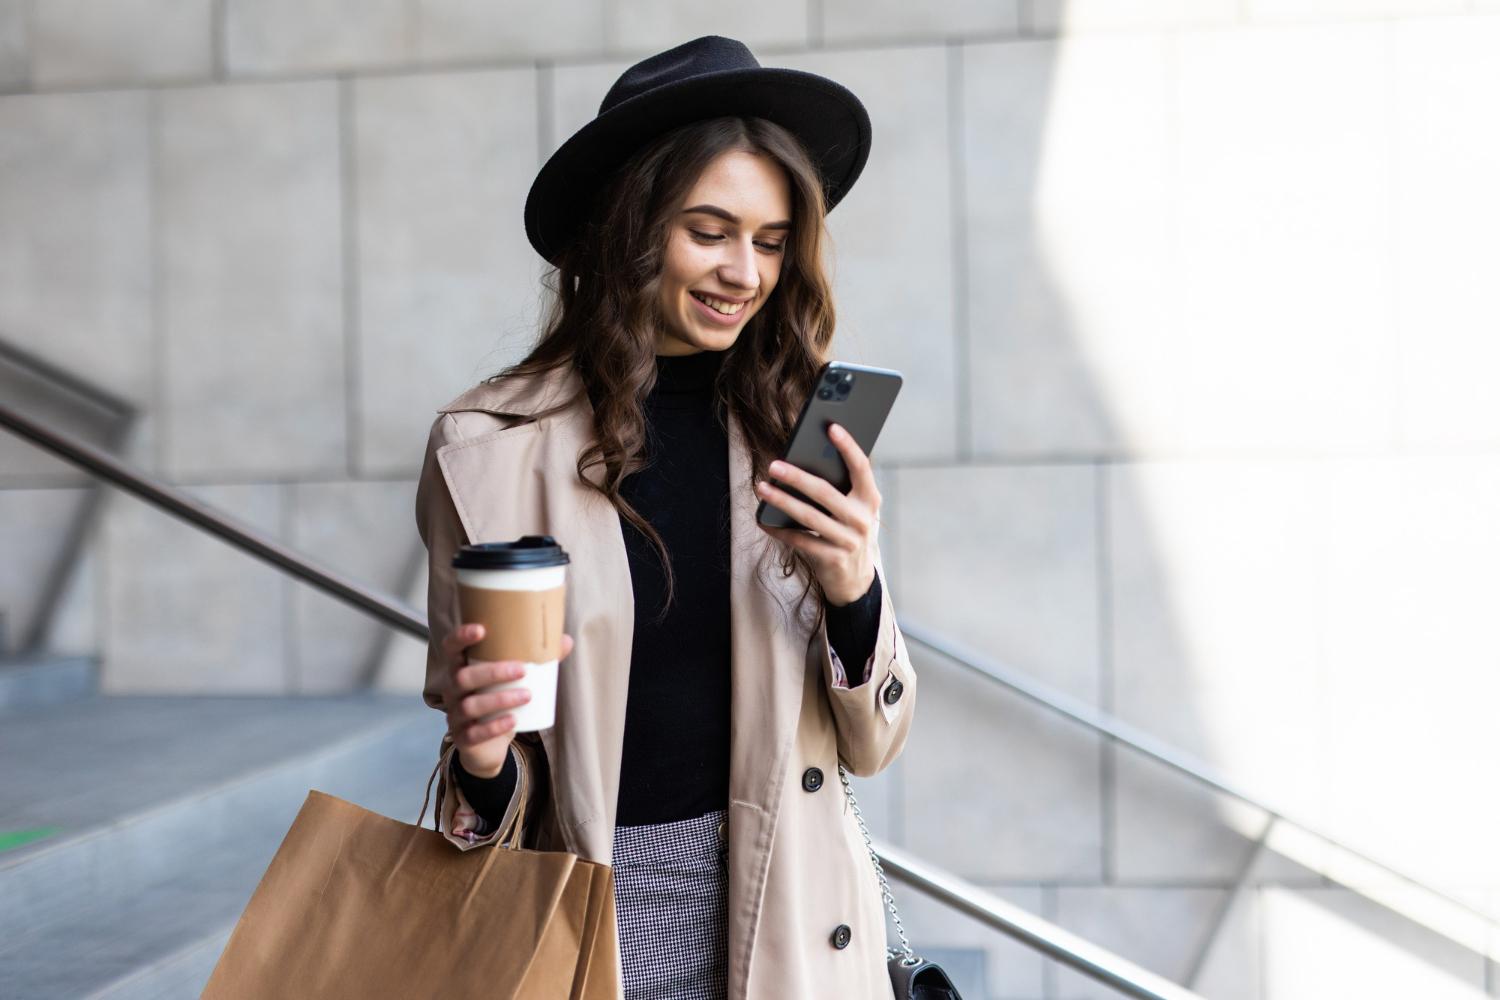 (P) Cumpărături direct de pe mobil – 45% dintre consumatori cumpără exclusiv din spațiul digital în 2024